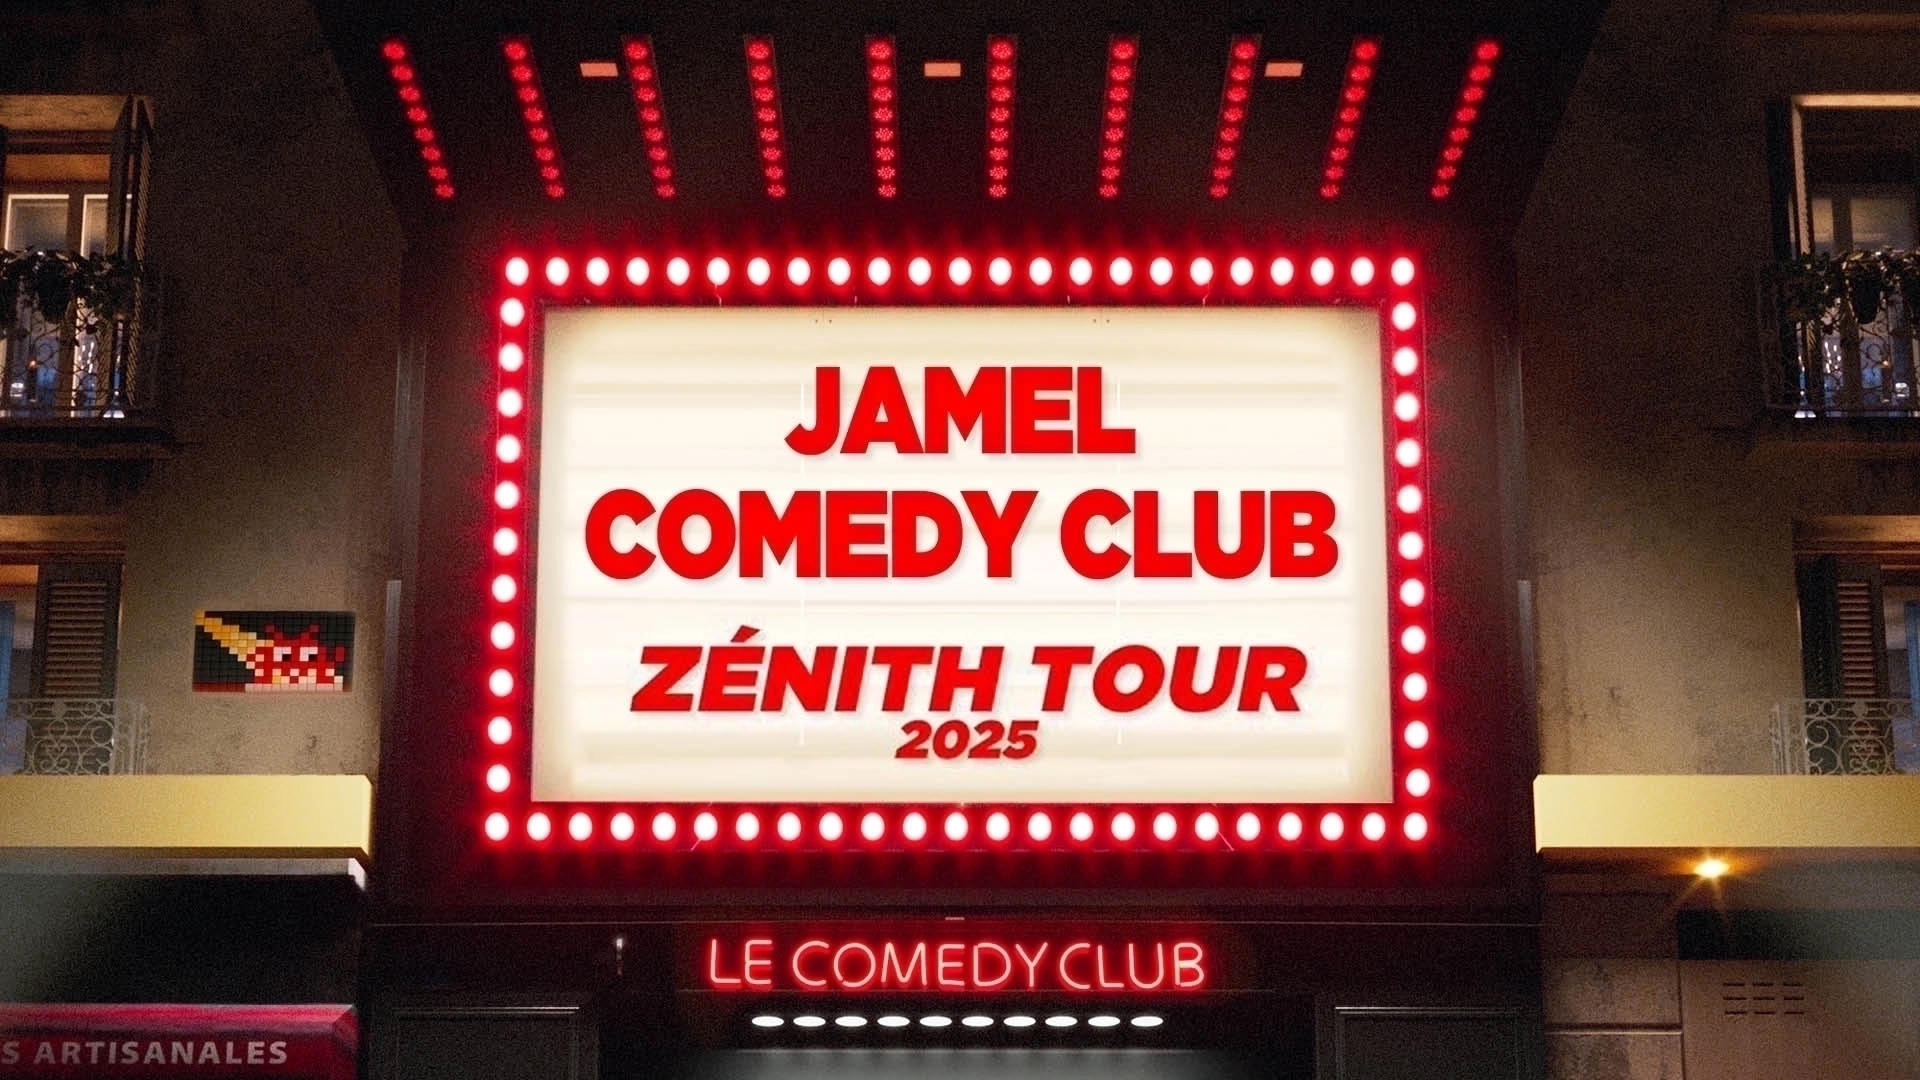 Jamel Comedy Club Zenith Tour 2025 in der Rockhal Tickets